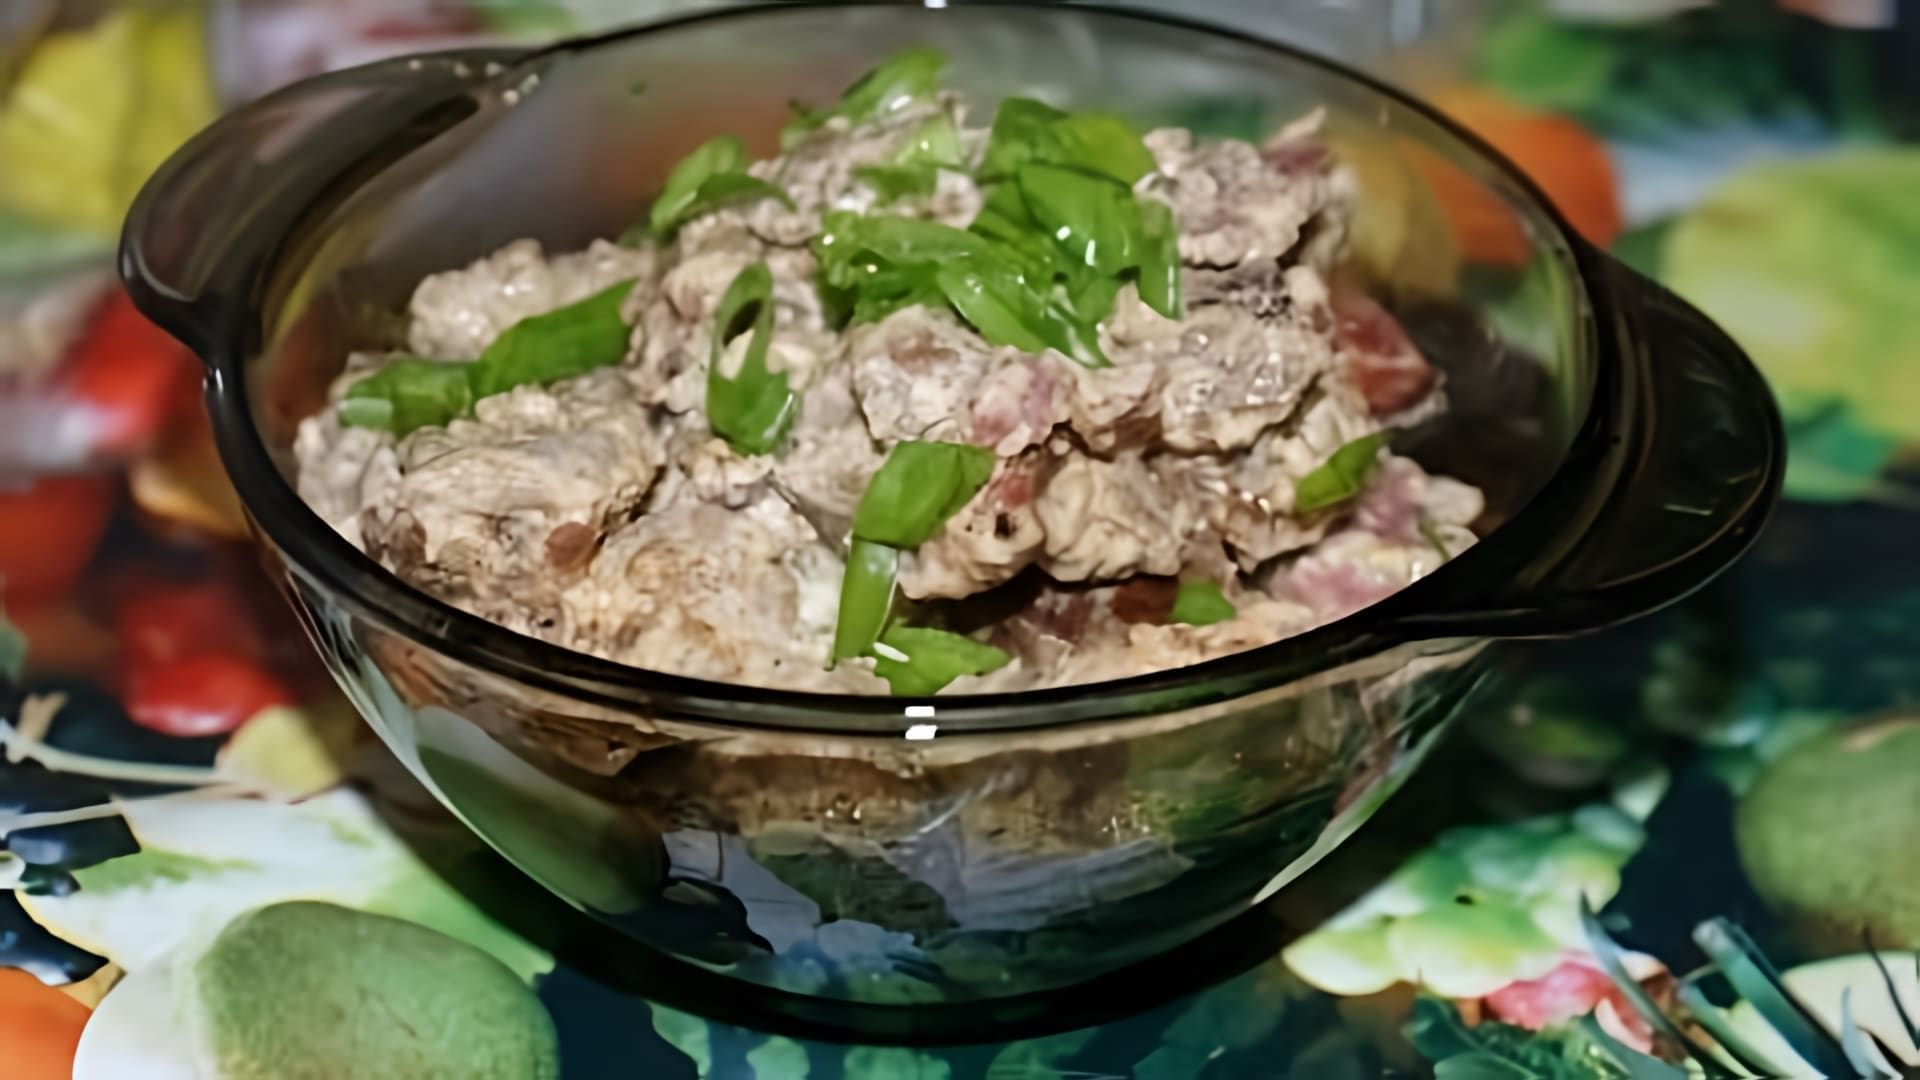 В этом видео представлен рецепт приготовления свинины со сливками и шампиньонами в мультиварке